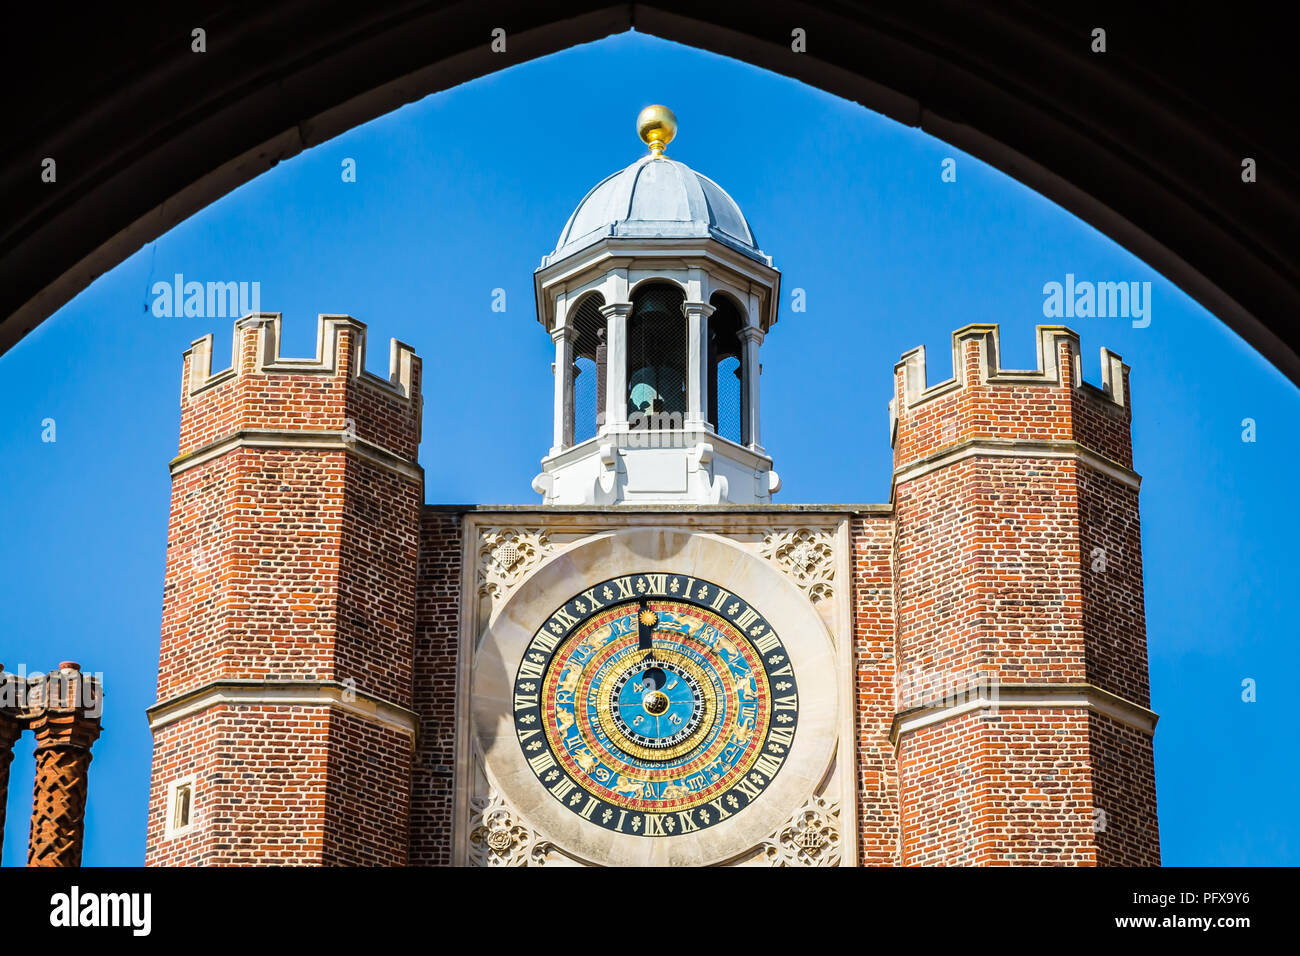 Le Palais de Hampton Court, Richmond, Londres, Royaume-Uni - 22 avril 2018 - Anne Boleyn's Gate ; le Tudor gatehouse et horloge astronomique, fait pour Henry VIII dans 15 Banque D'Images